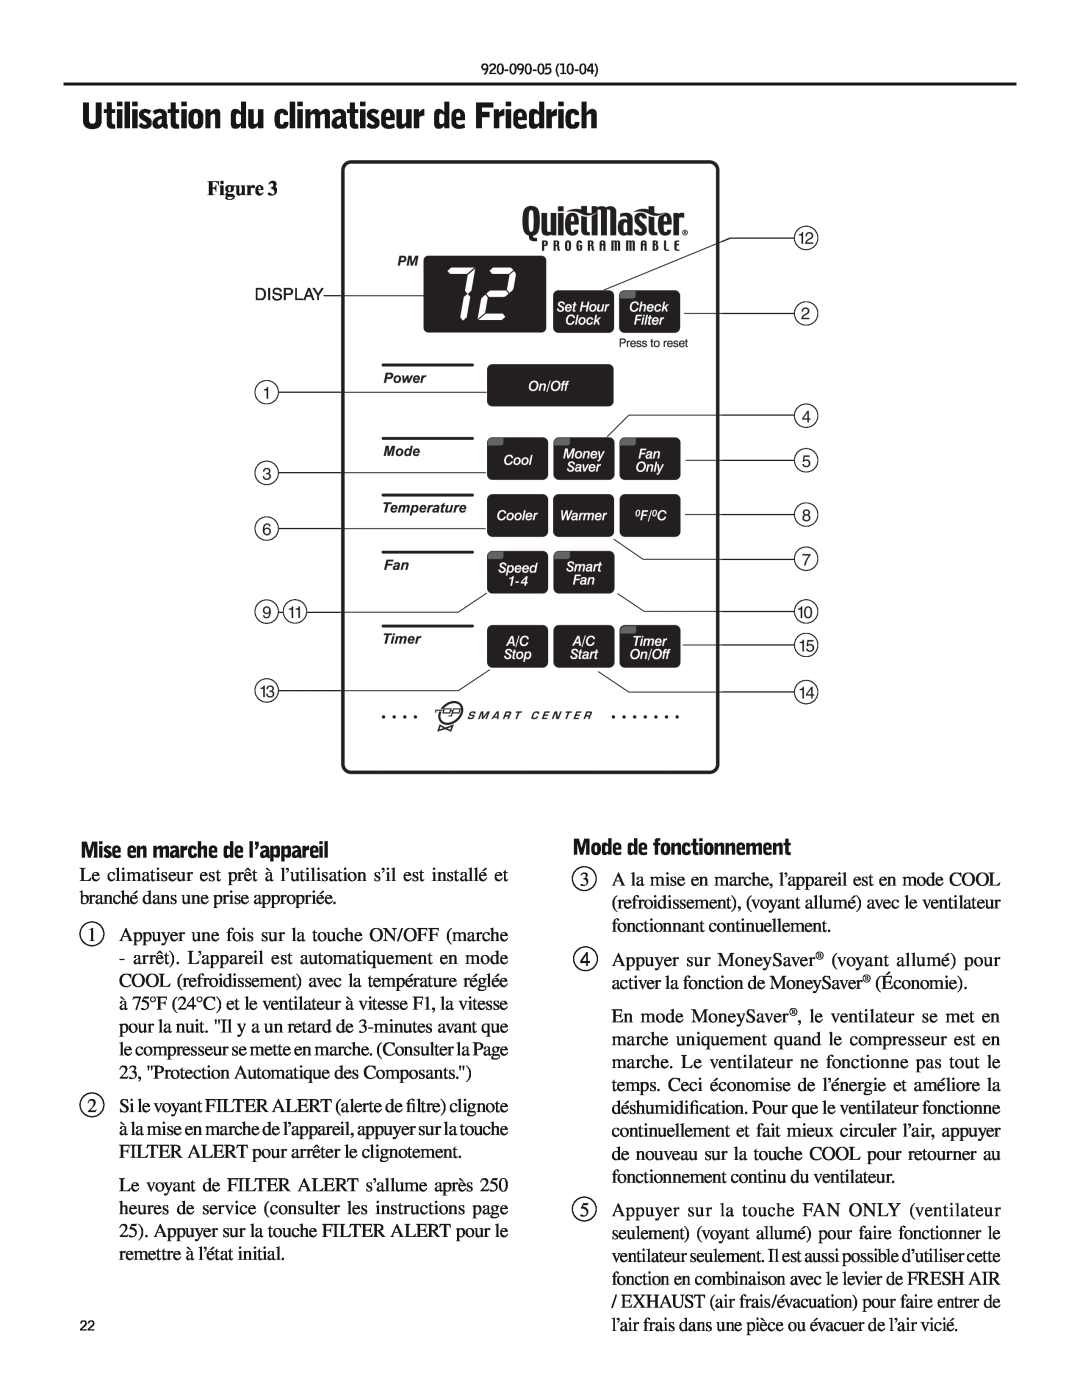 Friedrich SS09 manual Utilisation du climatiseur de Friedrich, Mise en marche de l’appareil, Mode de fonctionnement 